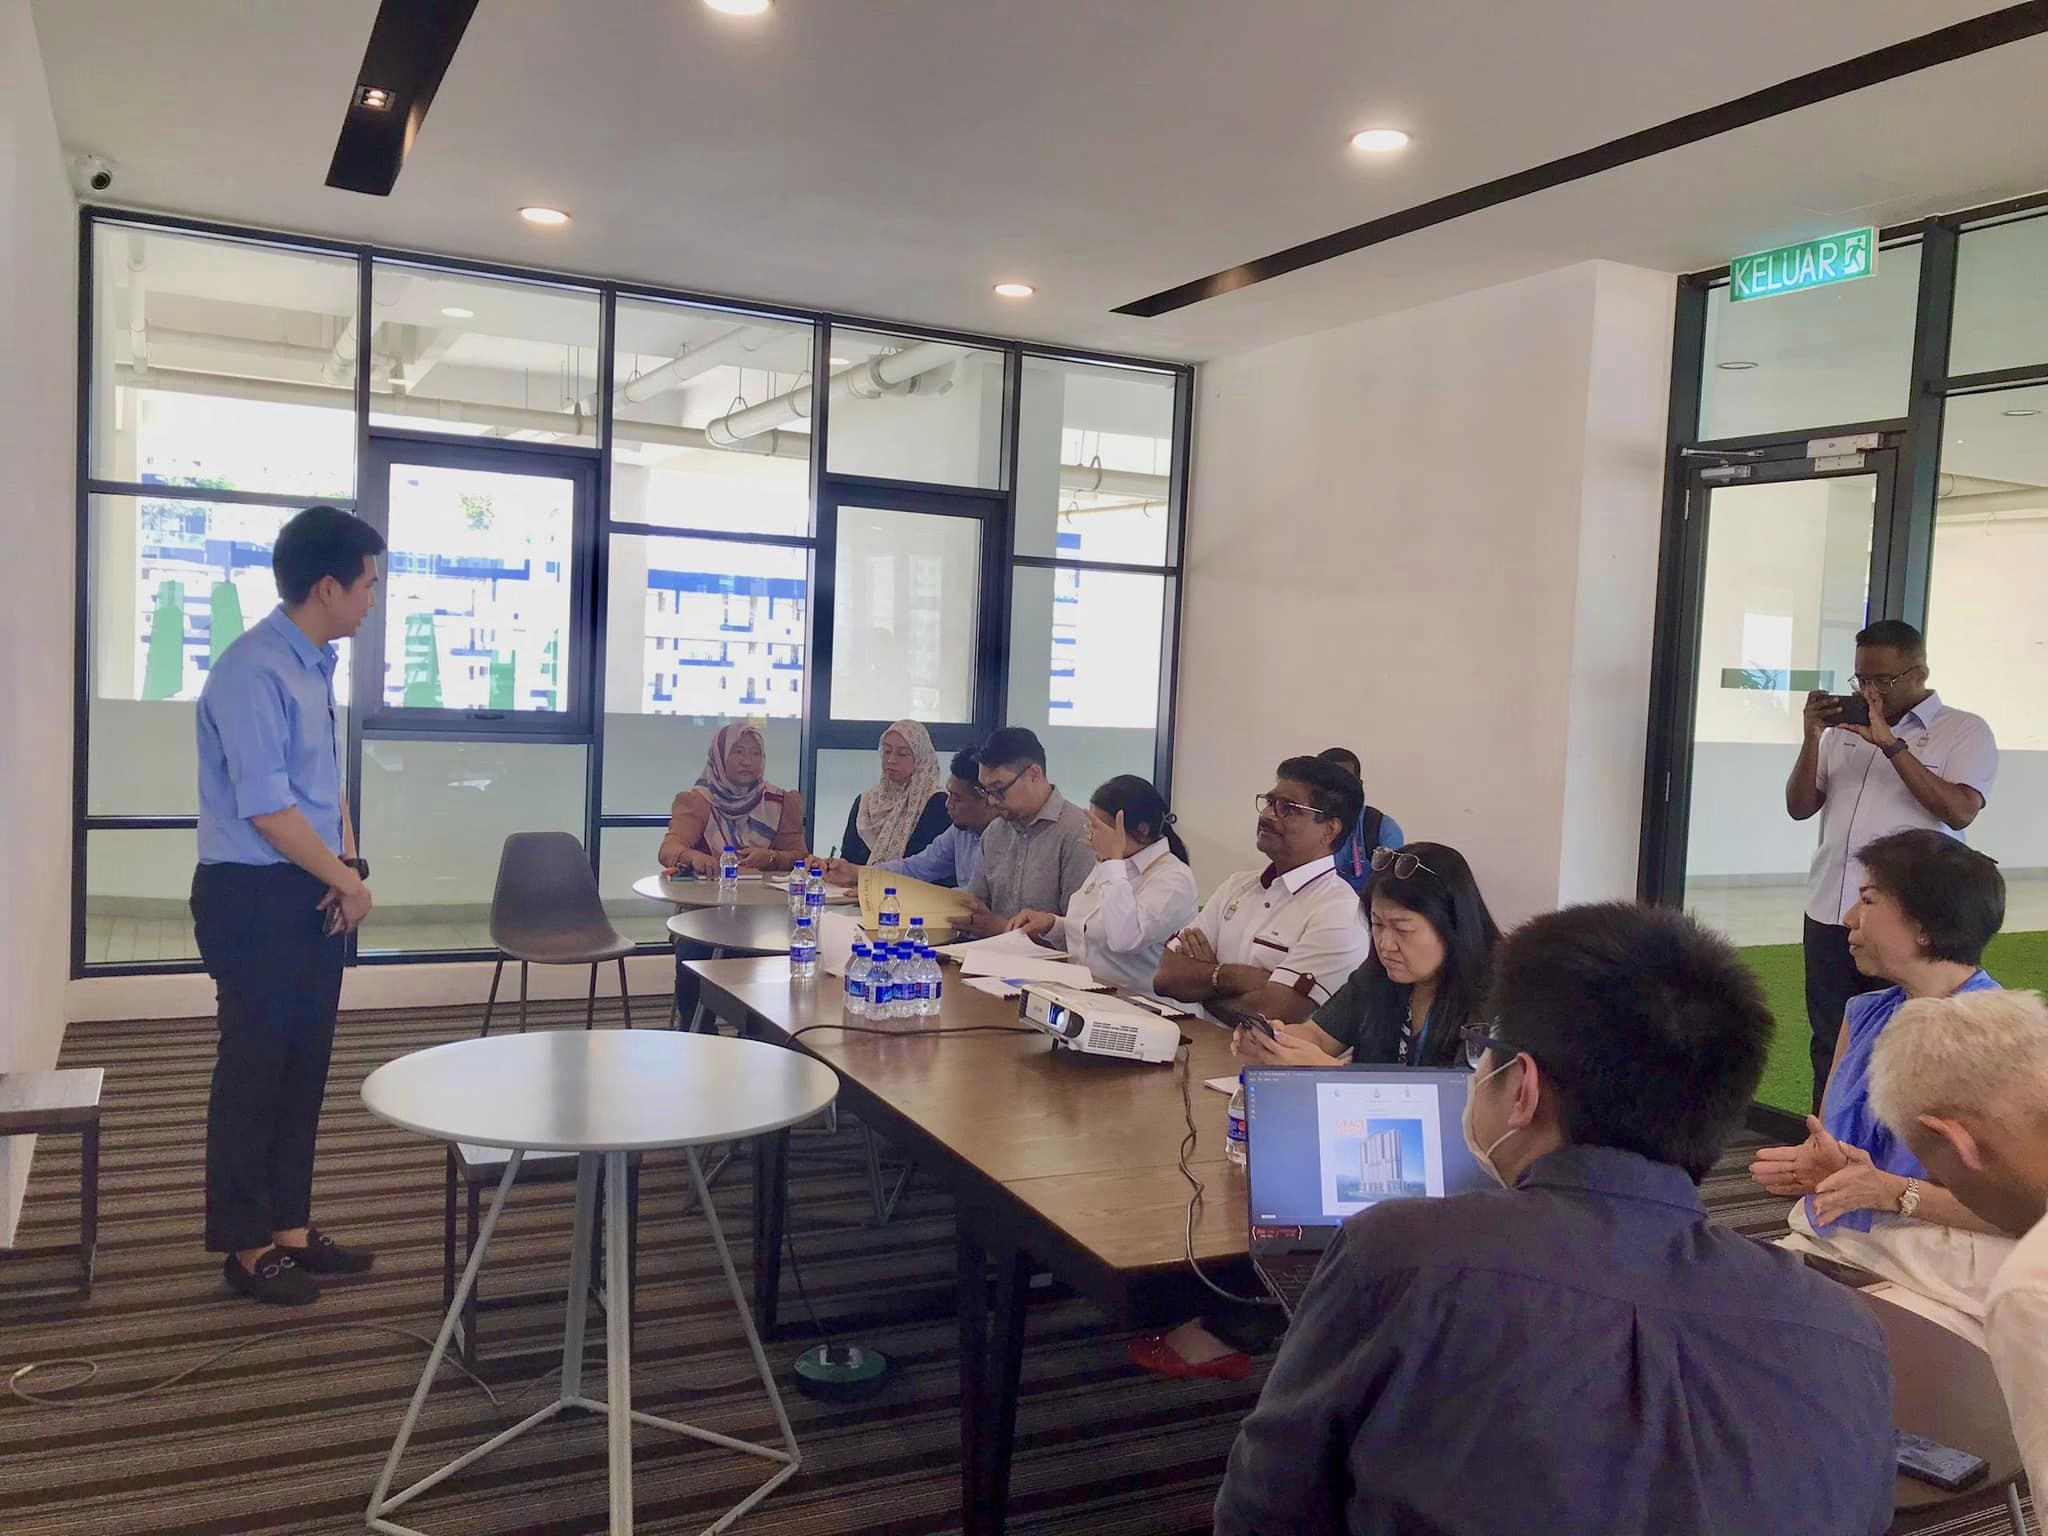 Lawatan Tapak ke Projek Grace Harmony Lembaga Perumahan Negeri Pulau Pinang (LPNPP) bersama YB Dato’ Seri Sundarajoo A/L Somu, EXCO Perumahan dan Alam Sekitar.